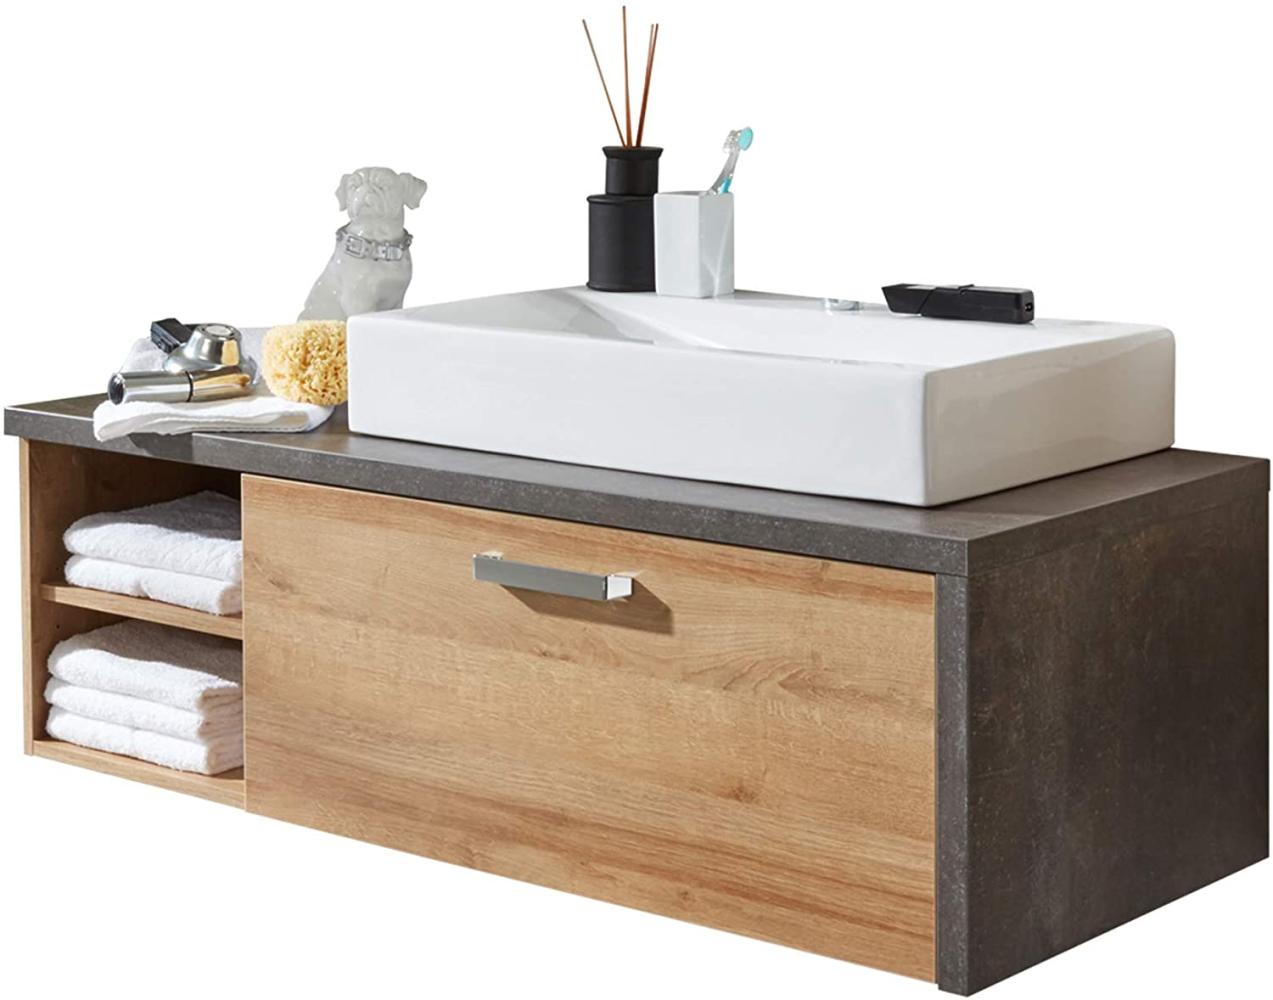 Waschtisch Set Waschbeckenunterschrank mit Waschbecken Eiche Riviera Honig grau Beton Design 123 cm Bay Bild 1